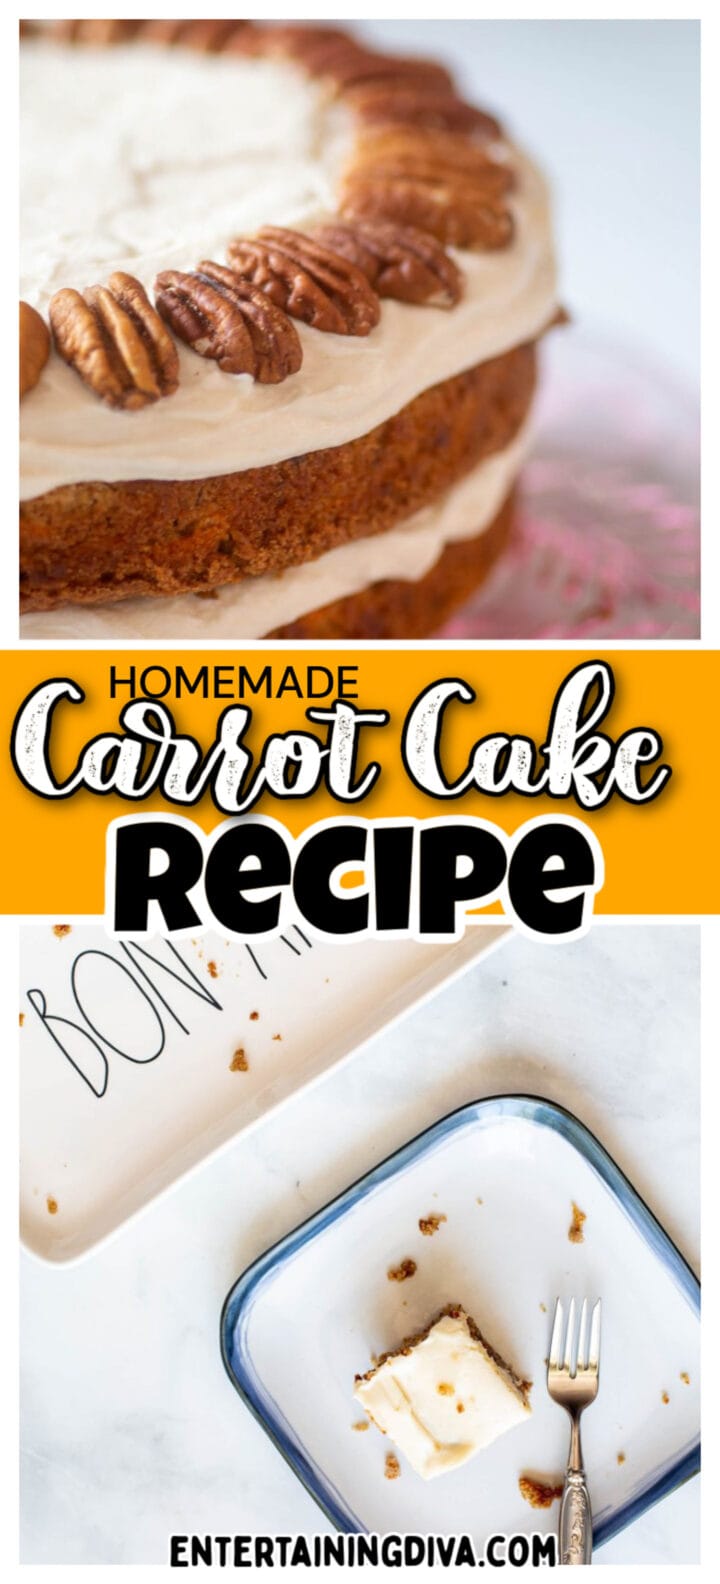 Classic Carrot Cake Recipe (From Scratch)